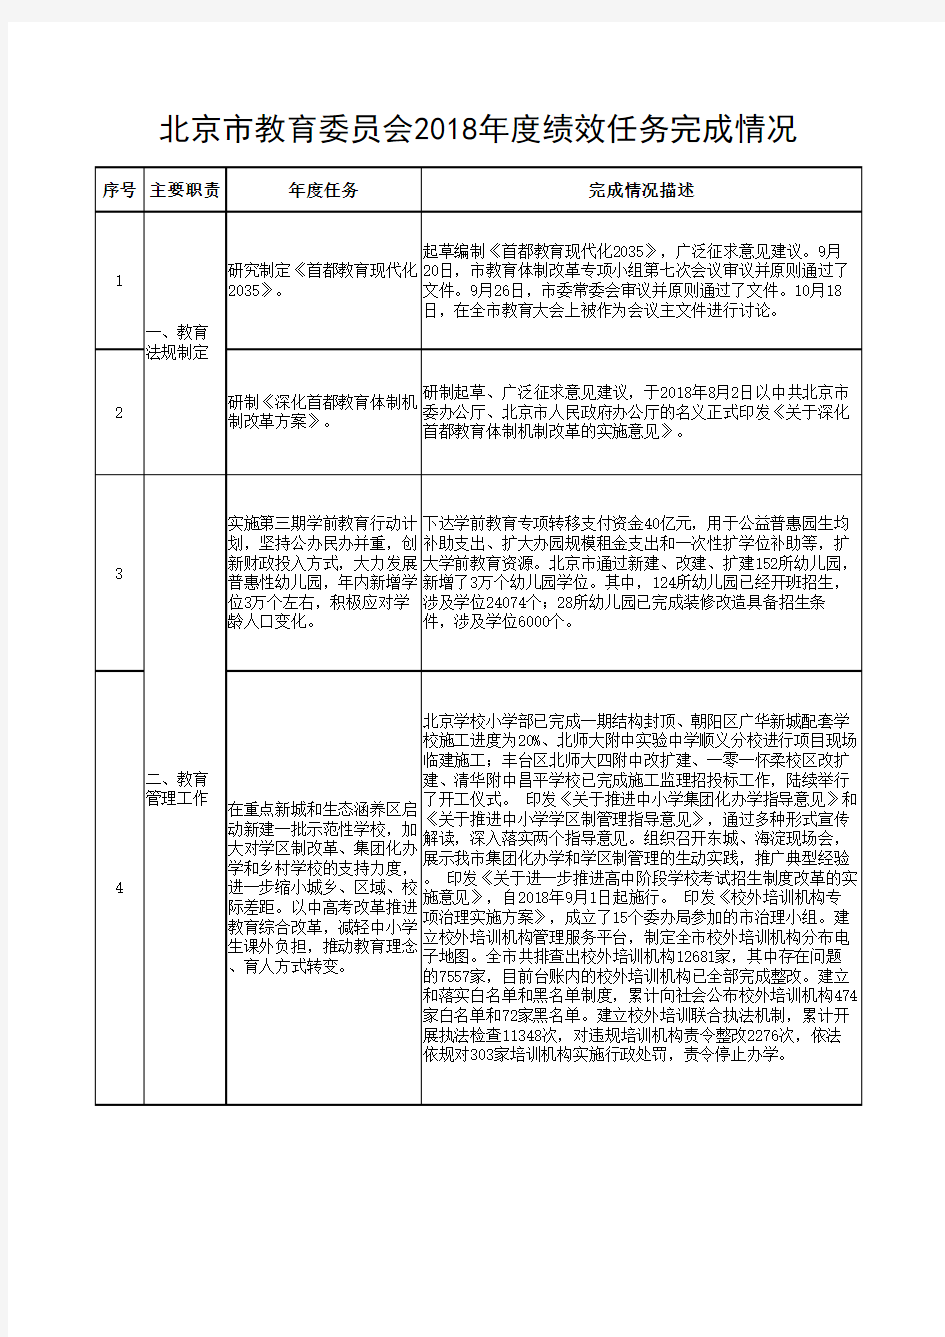 北京市教育委员会2018年度绩效任务完成情况